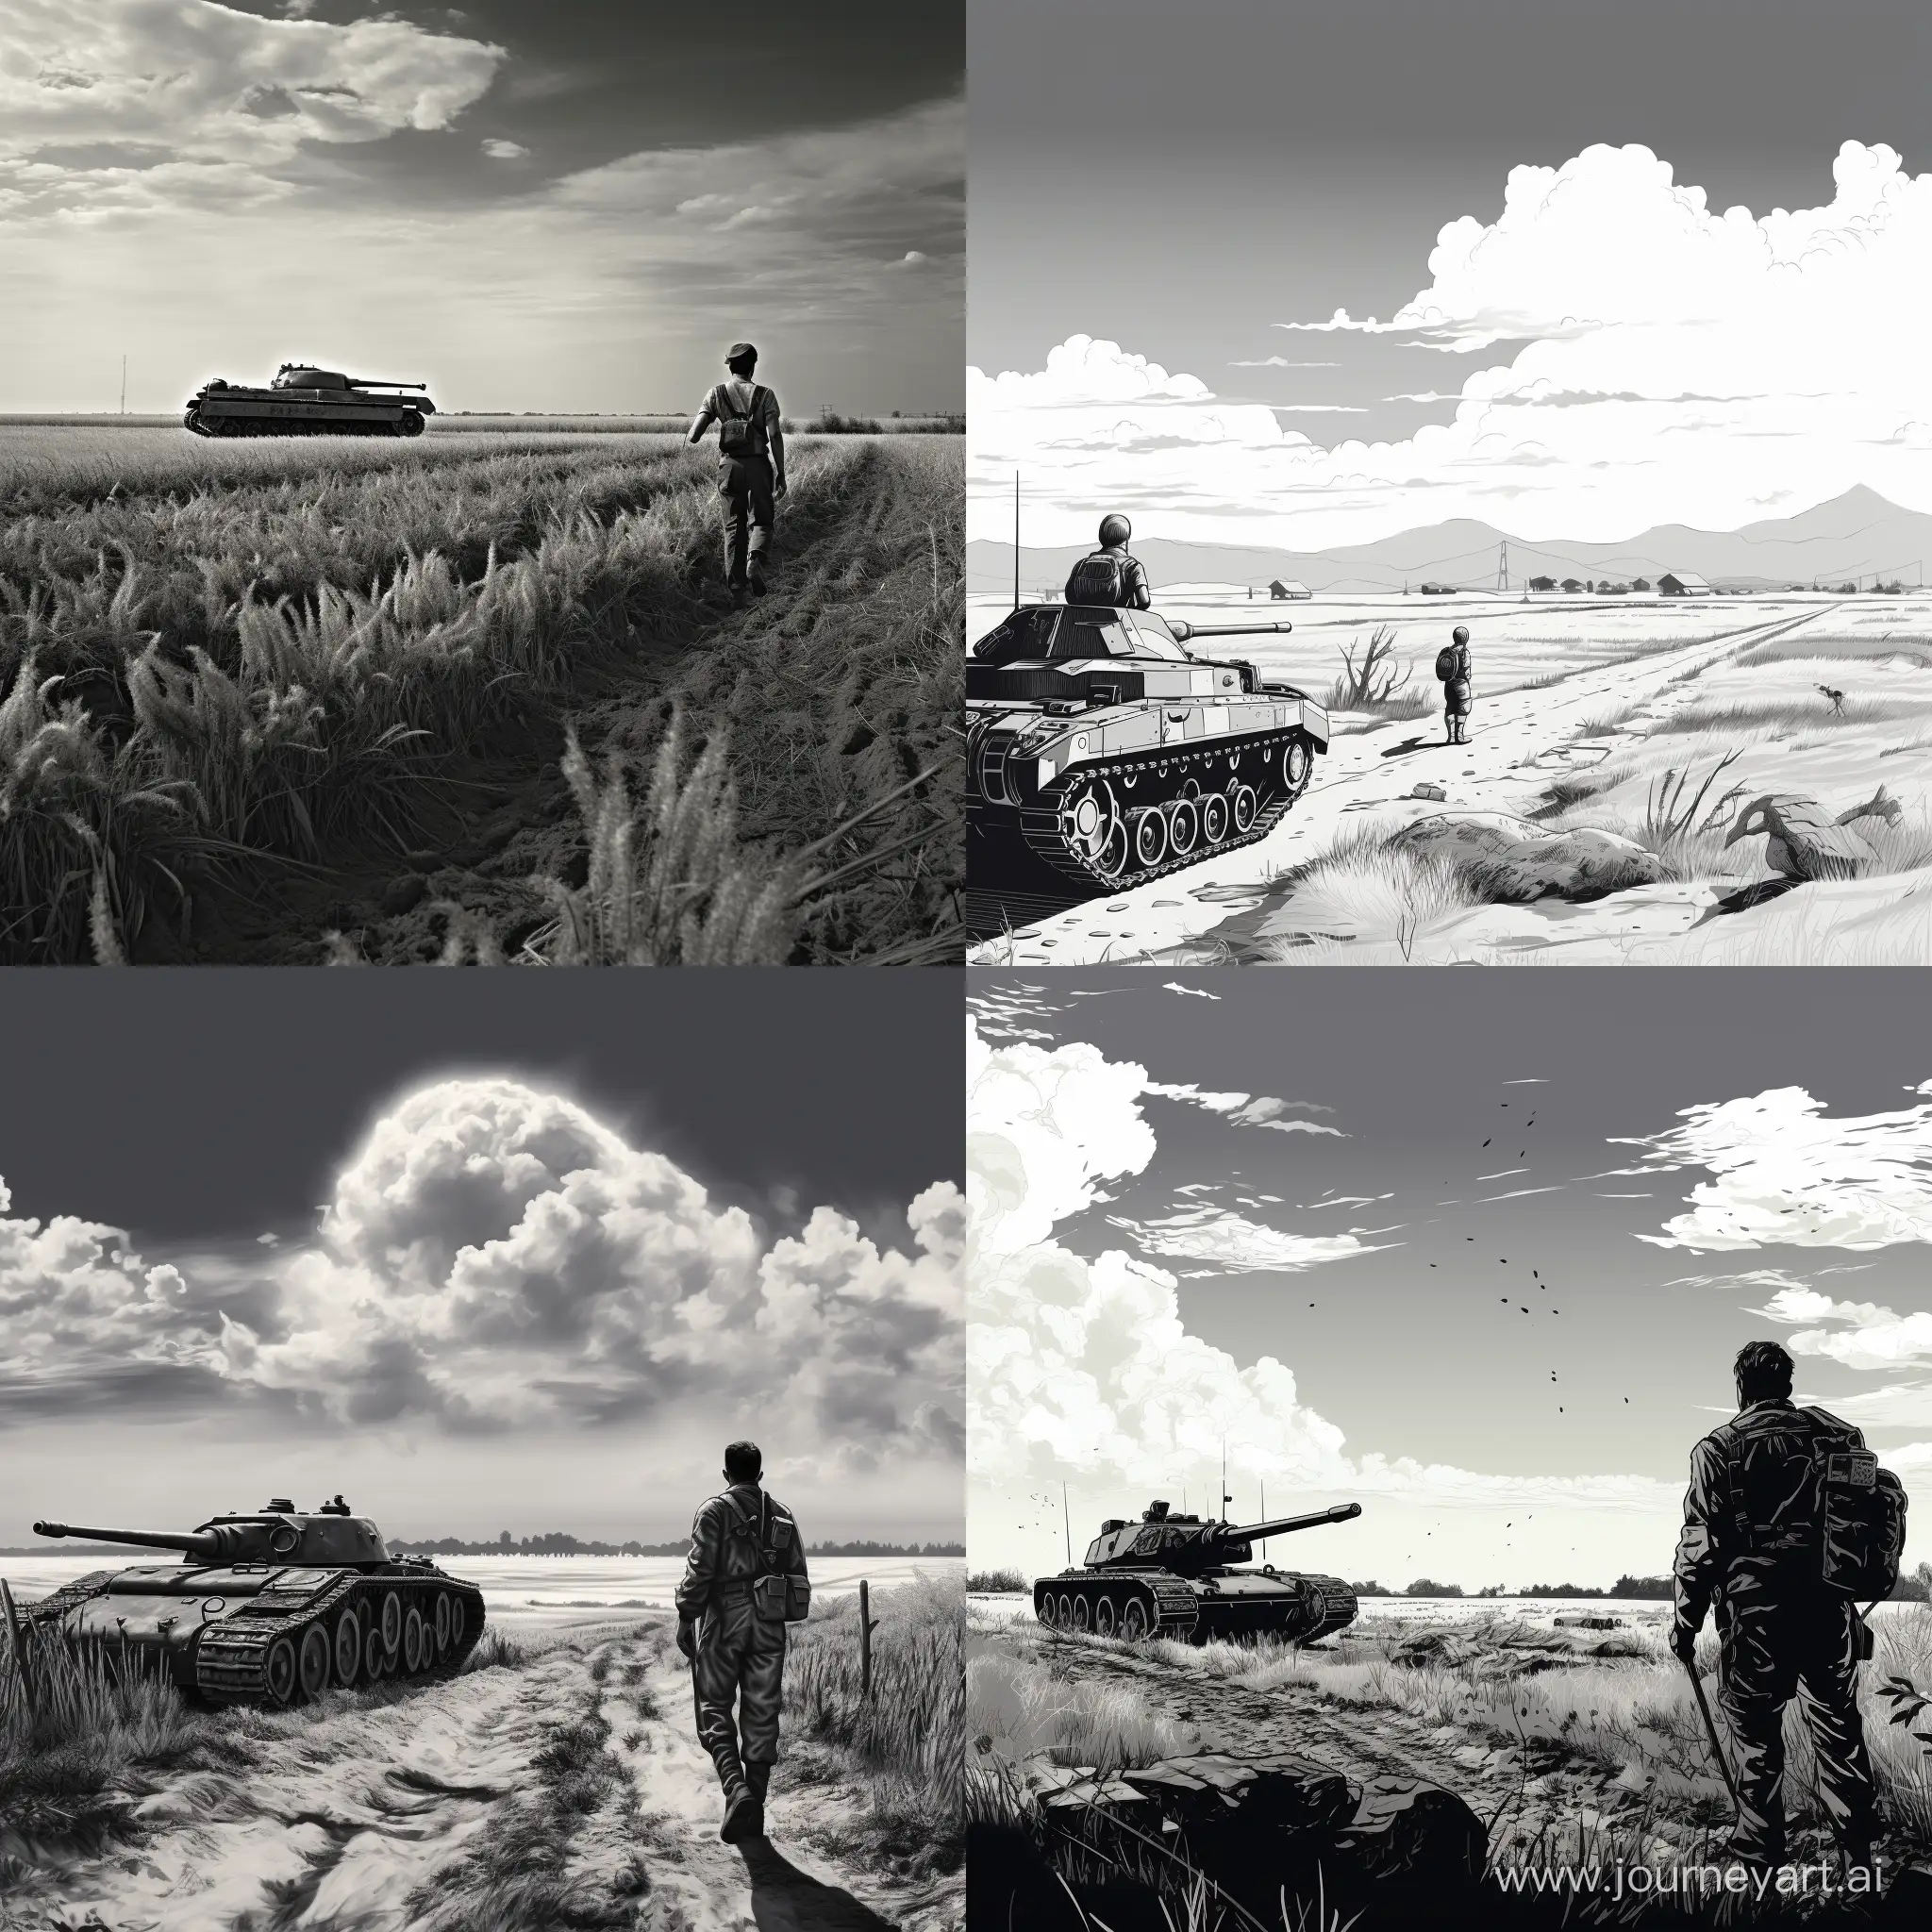 Черно-белая картинка Немецкий Солдат Времен второй мировой Войны СТОИТ с винтовкой смотрит назад, а далеко за ним едет Немецкий танк,. Ясное небо, Поле